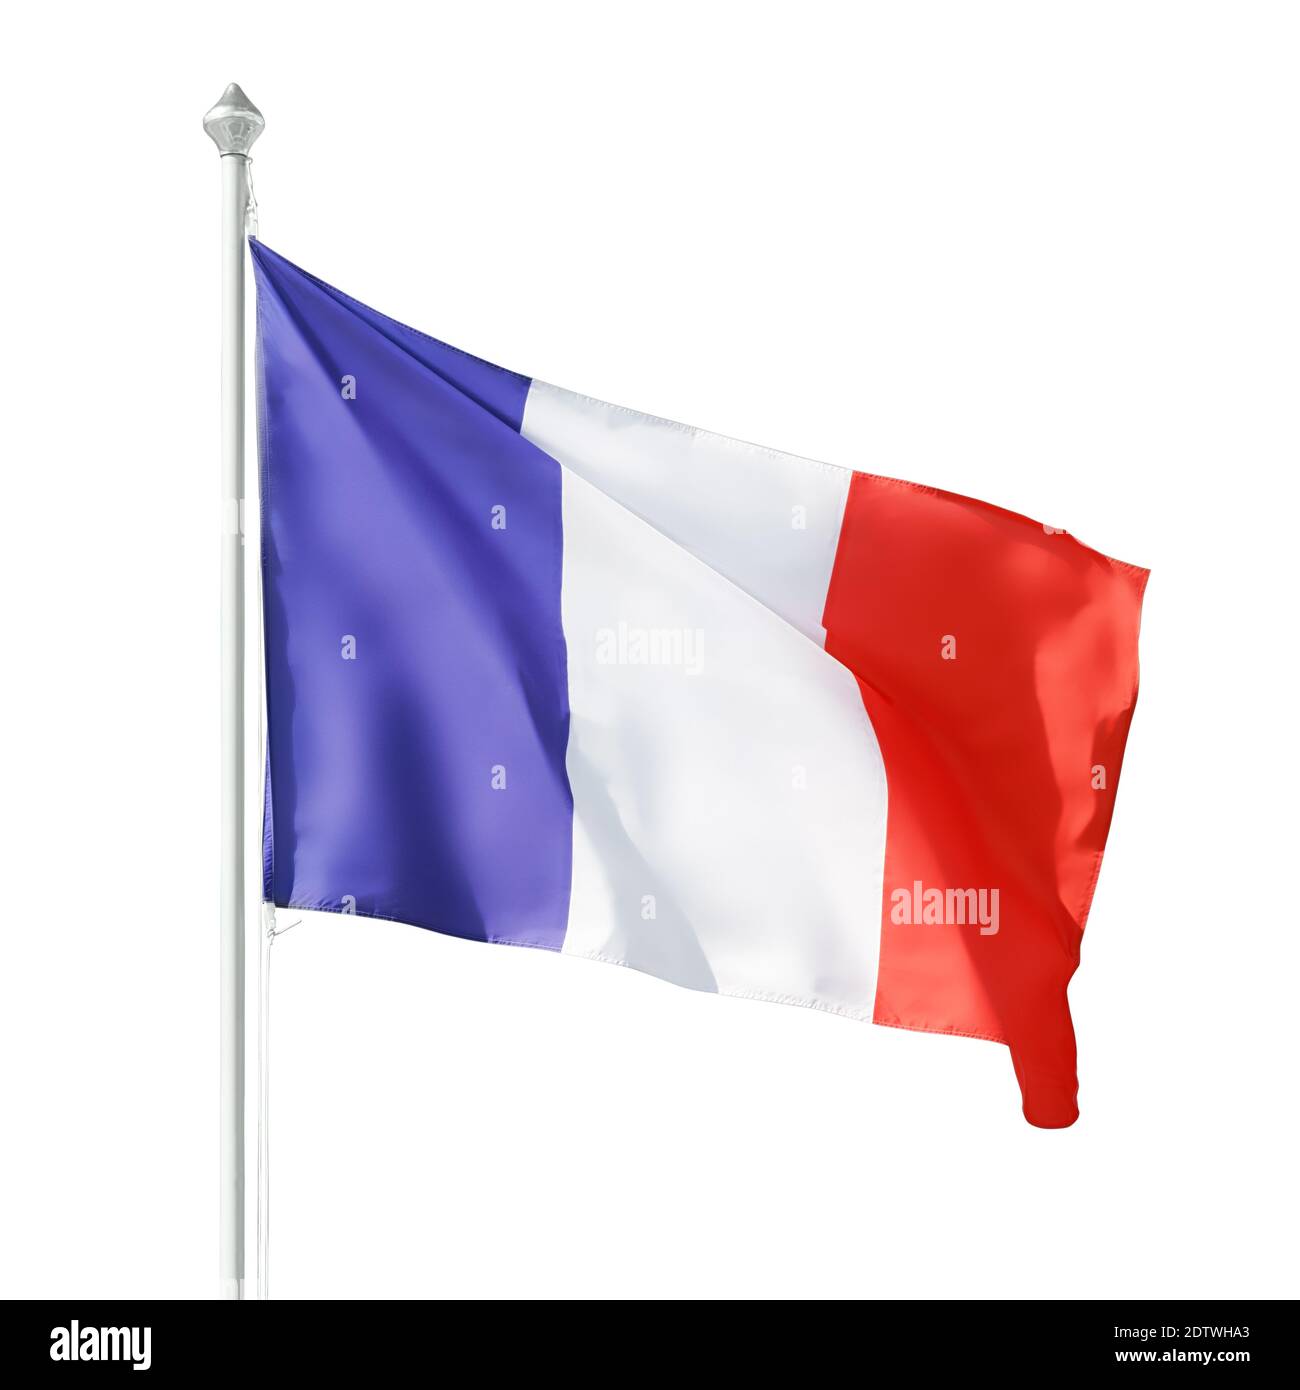 Flagge der Französischen republik auf Fahnenmast. Isoliert auf weiß, Beschneidungspfad enthalten Stockfoto